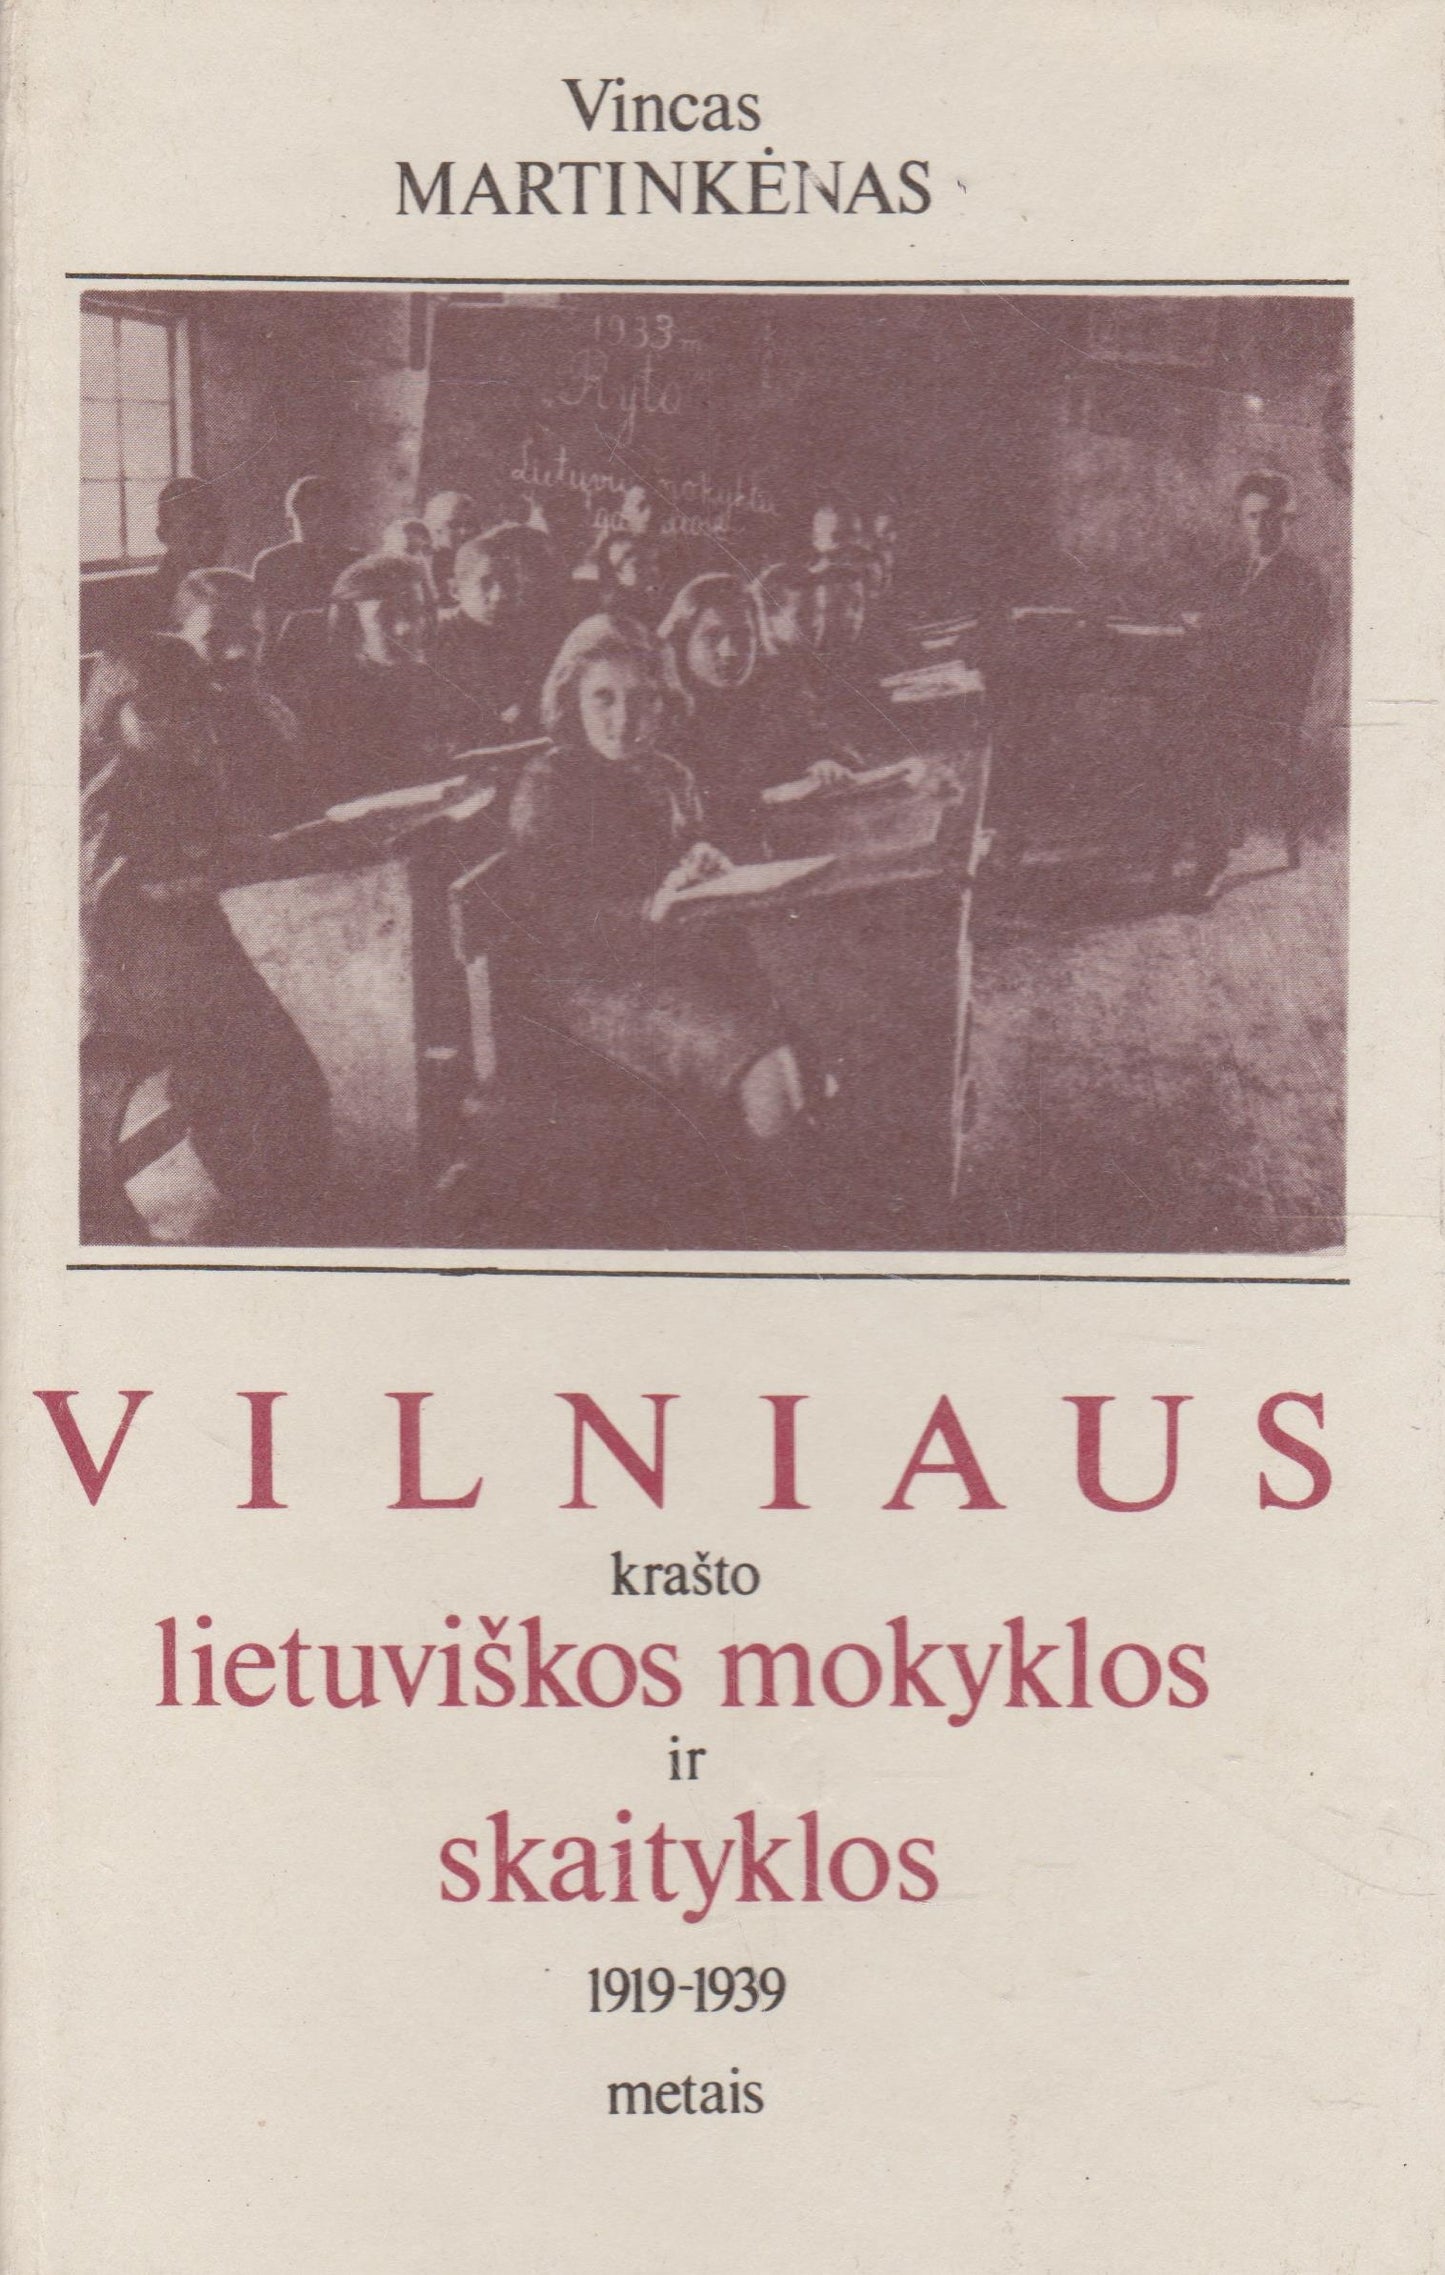 Vilniaus krašto lietuviškos mokyklos ir skaityklos 1919-1939 m.